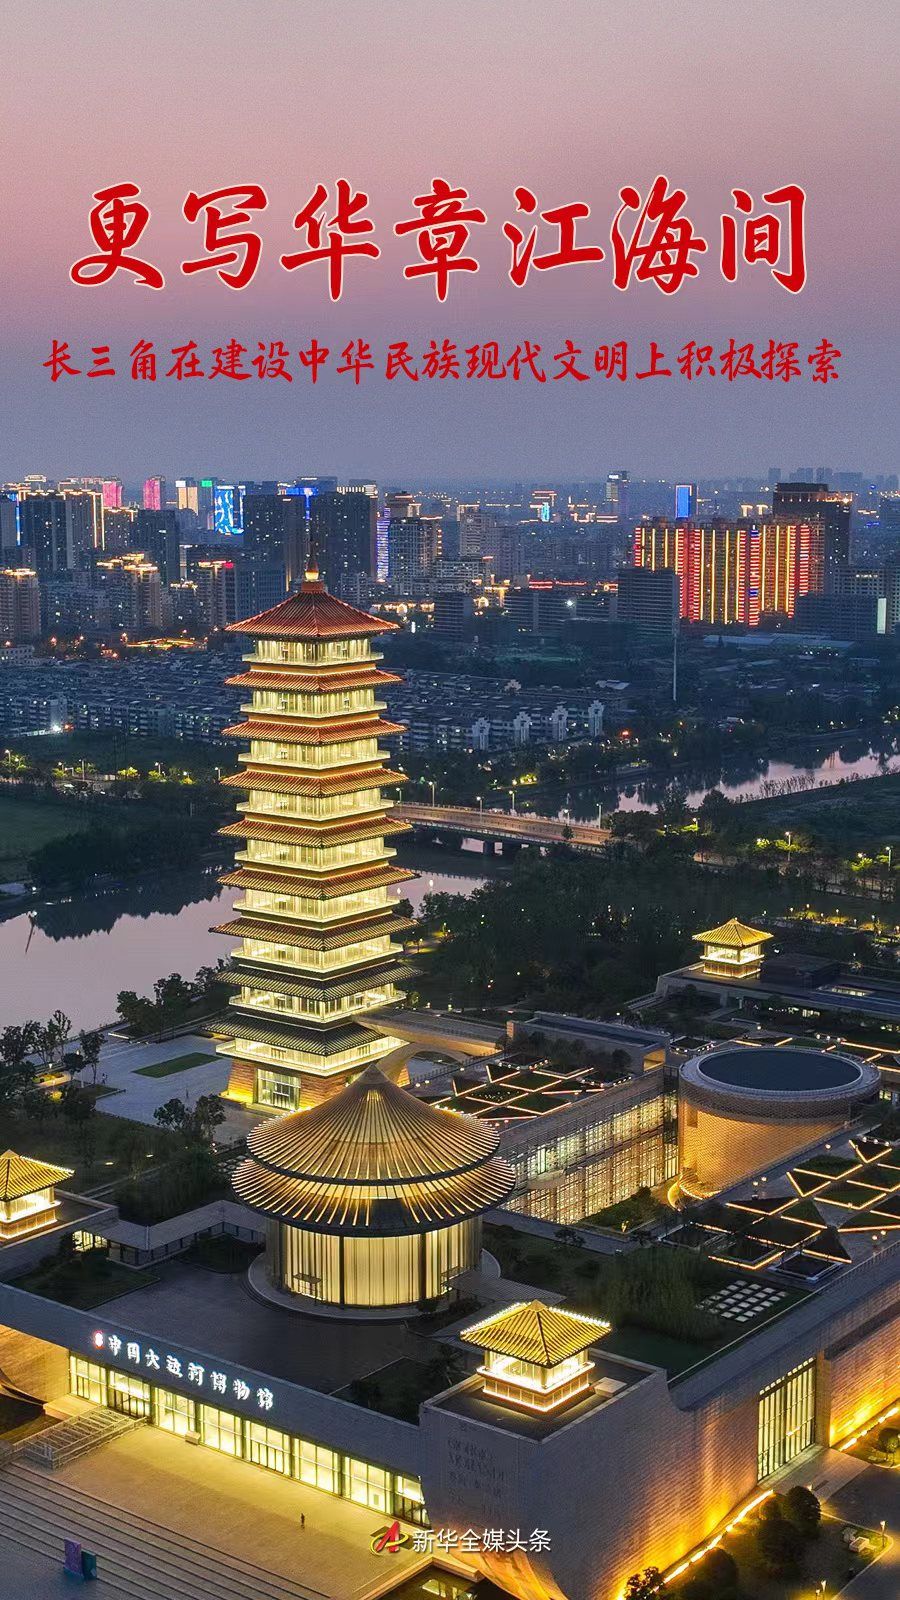 更写华章江海间——长三角在建设中华民族现代文明上积极探索